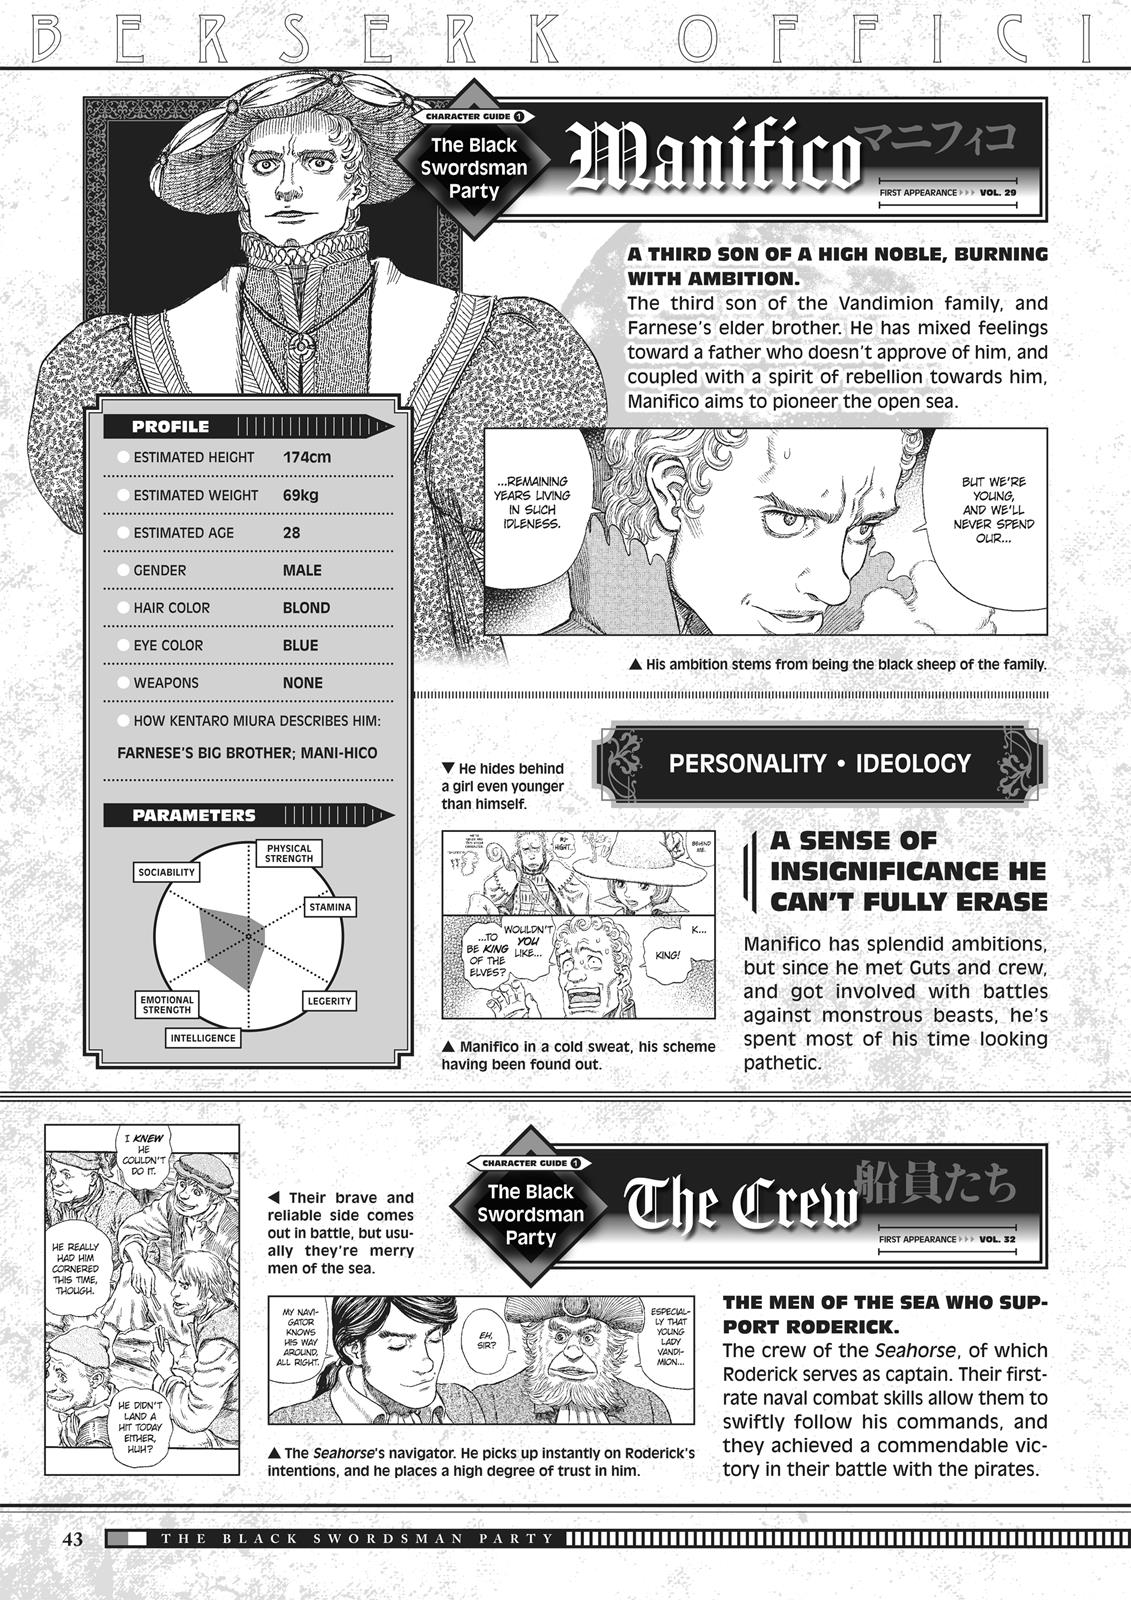 Berserk Manga Chapter 350.5 image 043